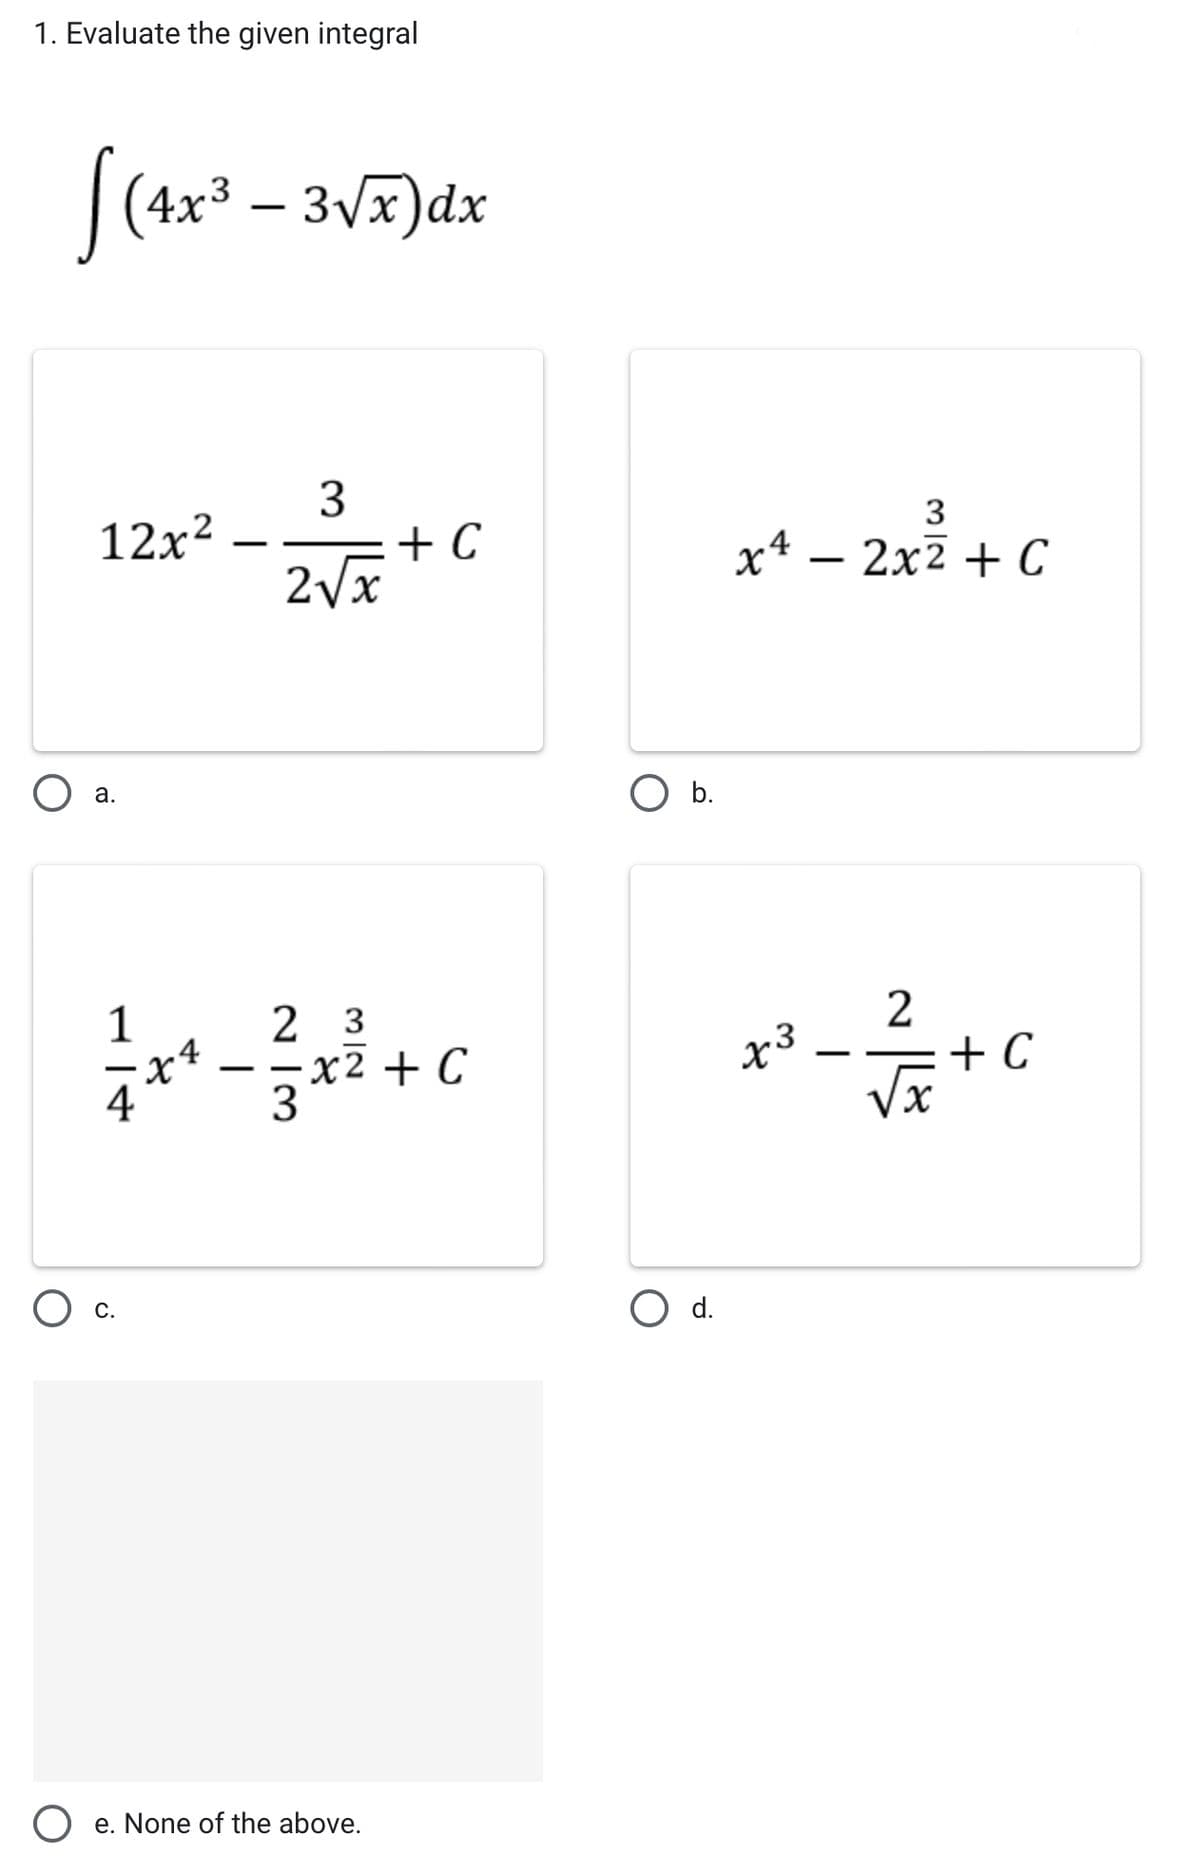 1. Evaluate the given integral
[(4x³ - 3√x) dx
12x²
O a.
1
x²
O c.
3
2√x
+ C
2 3
x2 + C
3
Oe. None of the above.
O b.
O d.
3
x4 - 2x² + C
x3
-
~||
+ C